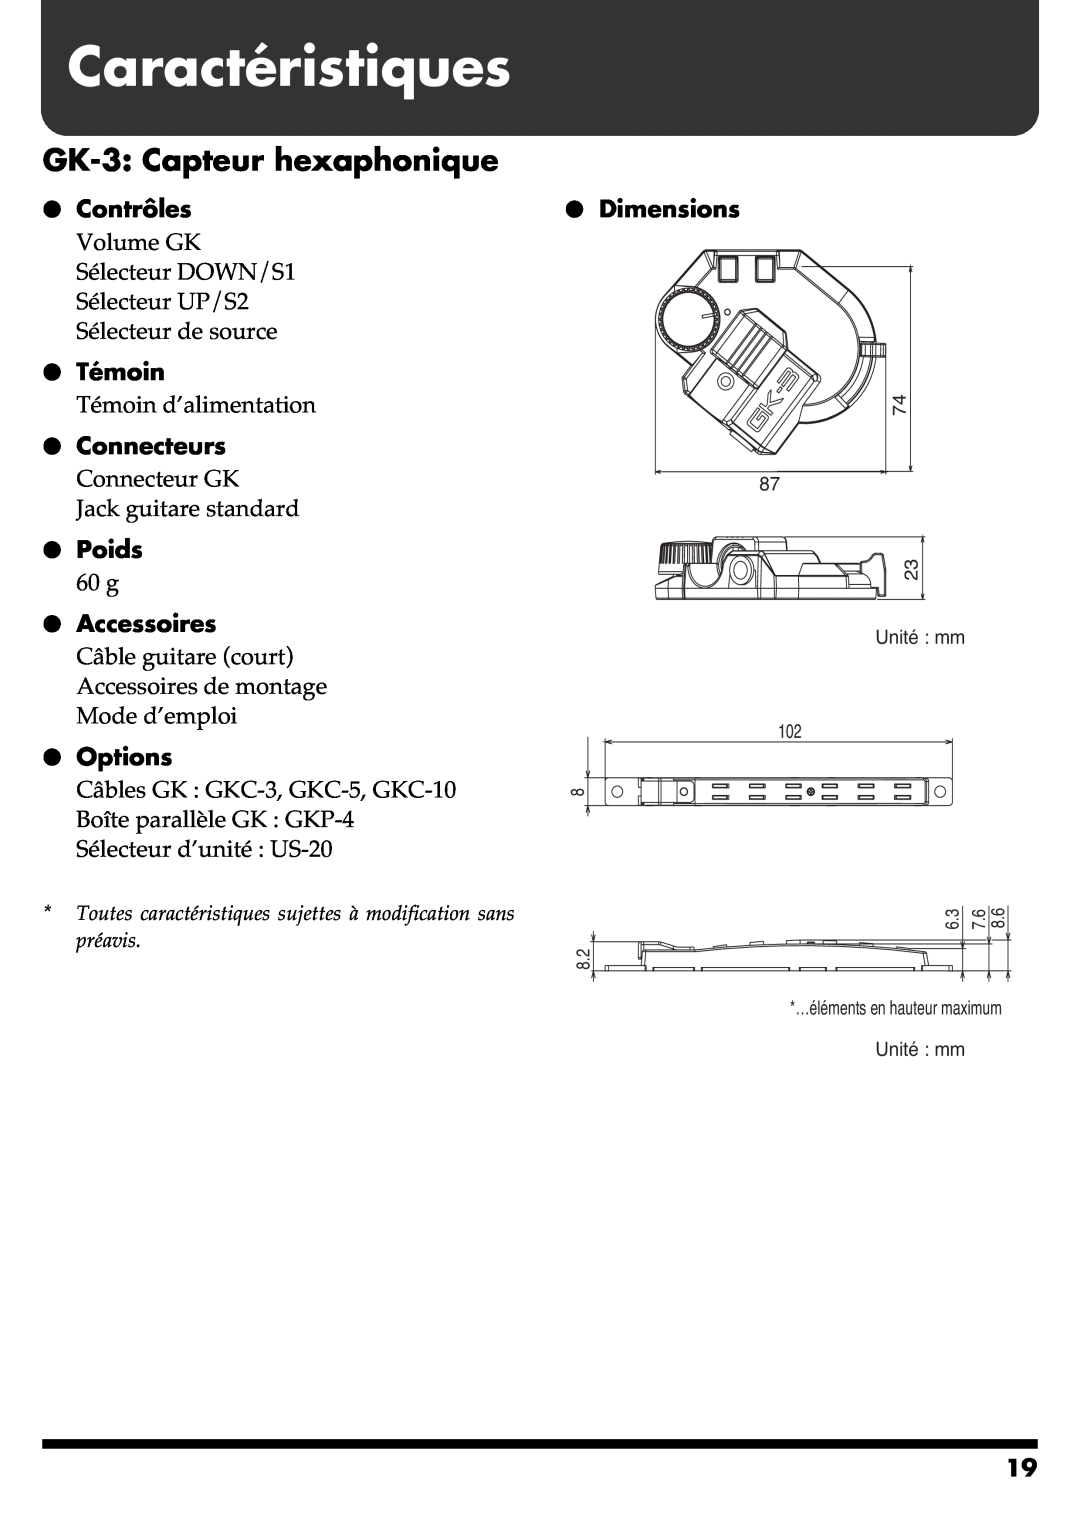 Roland GR-20 Caractéristiques, GK-3 Capteur hexaphonique, Contrôles, Témoin, Connecteurs, Poids, Accessoires, Options 